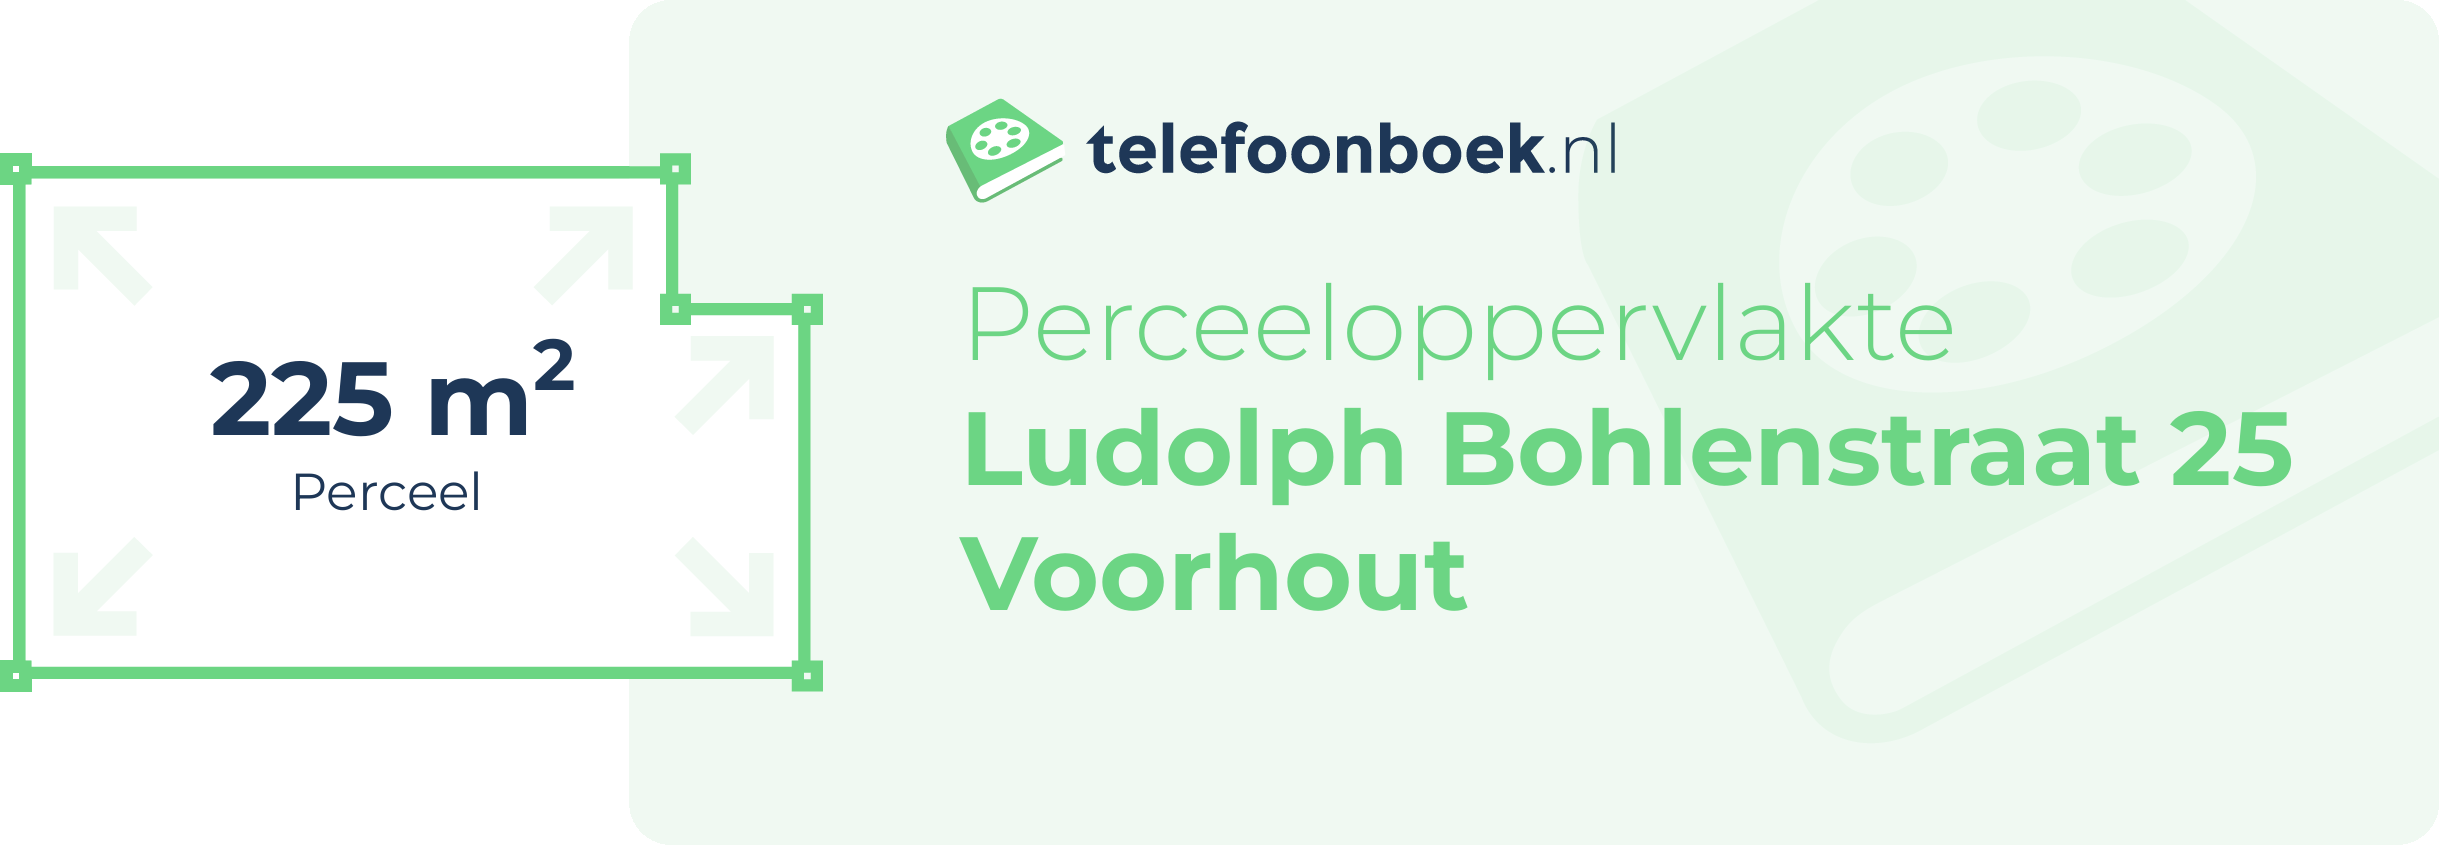 Perceeloppervlakte Ludolph Bohlenstraat 25 Voorhout